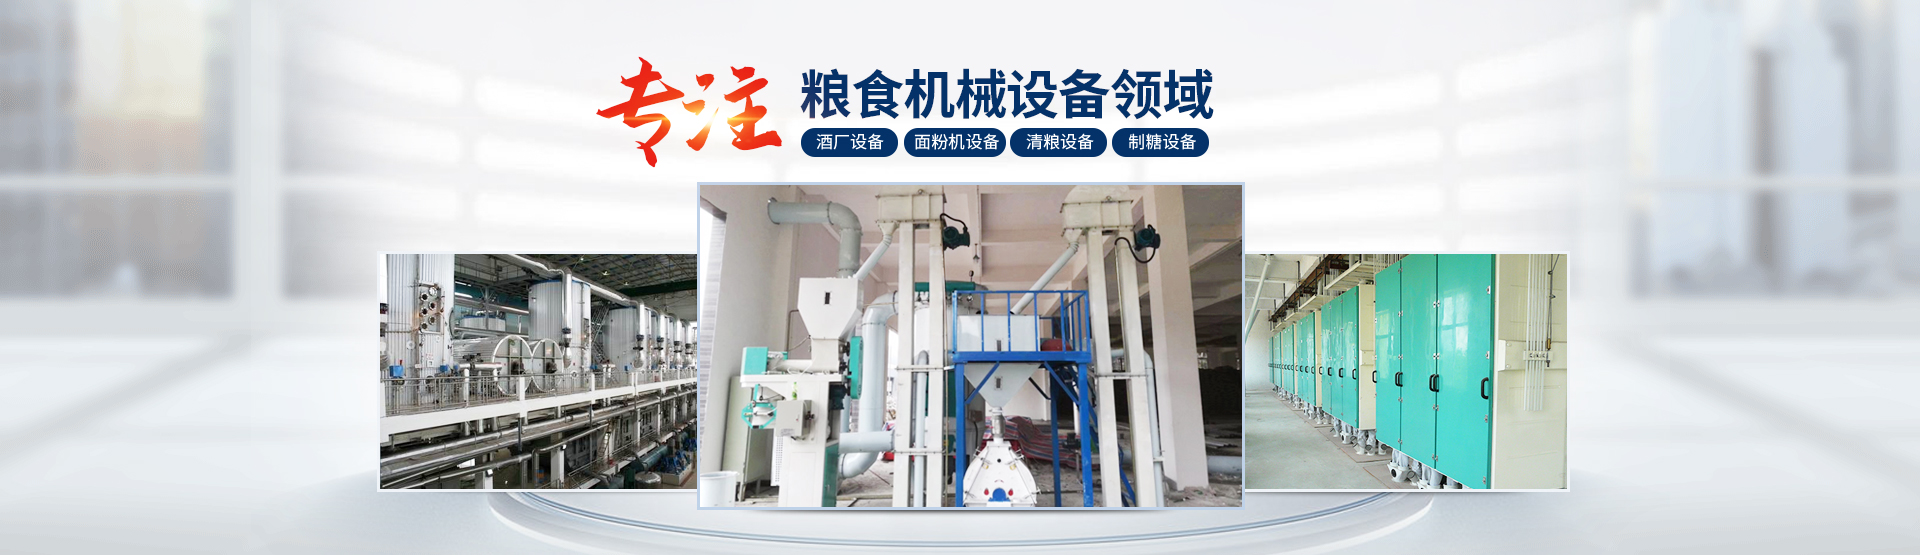 滑县永昌粮食机械设备销售有限公司